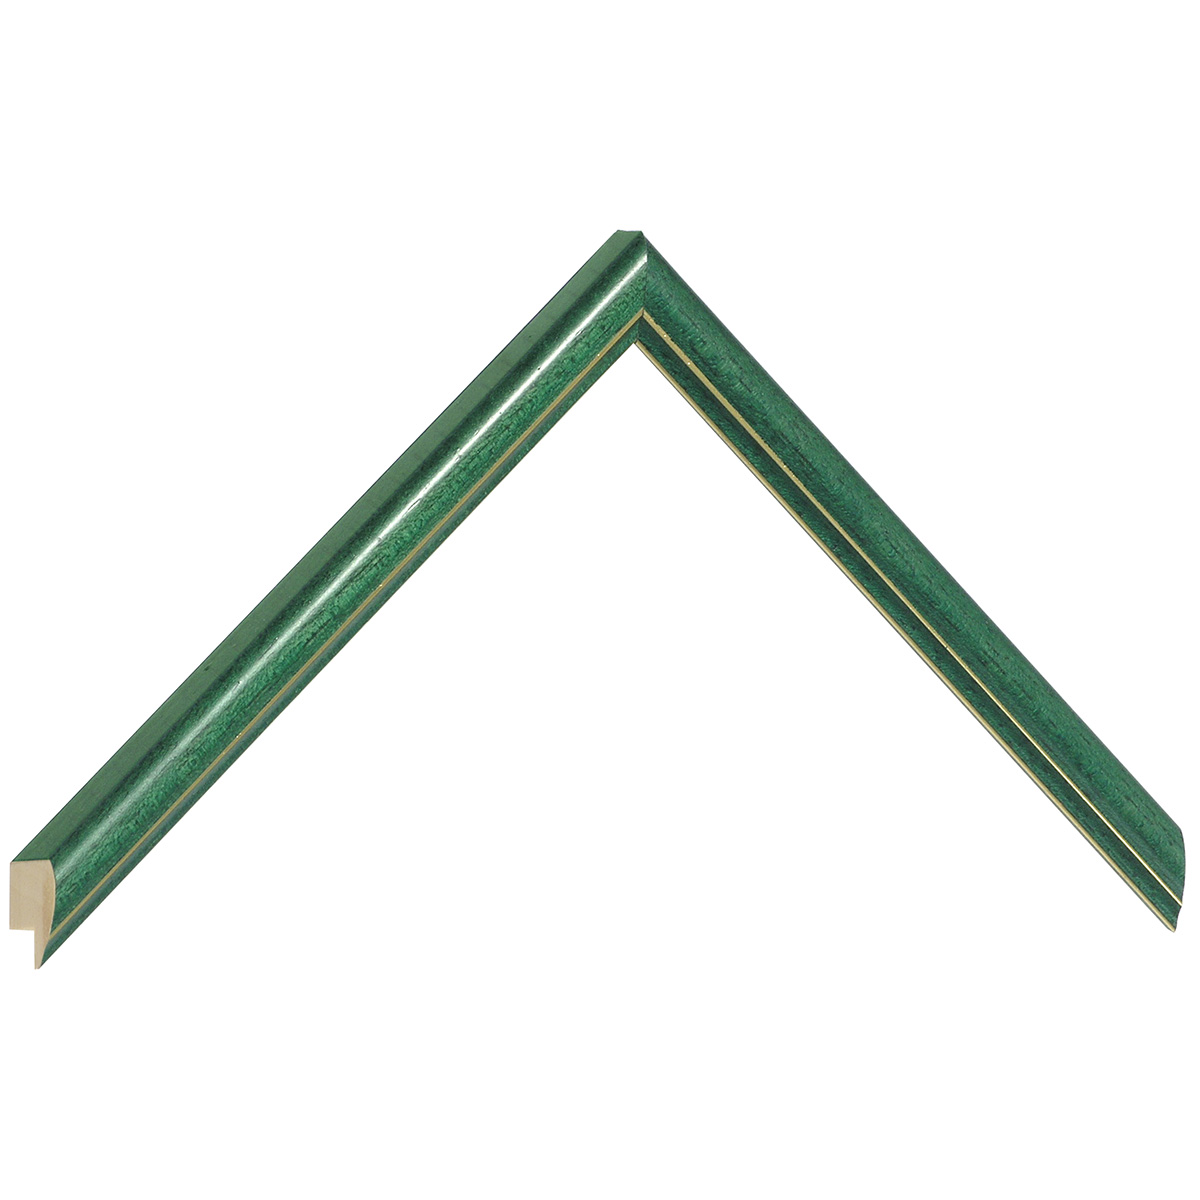 Asta in ayous giuntato larg. mm 13 - colore verde con filo argento - Campione